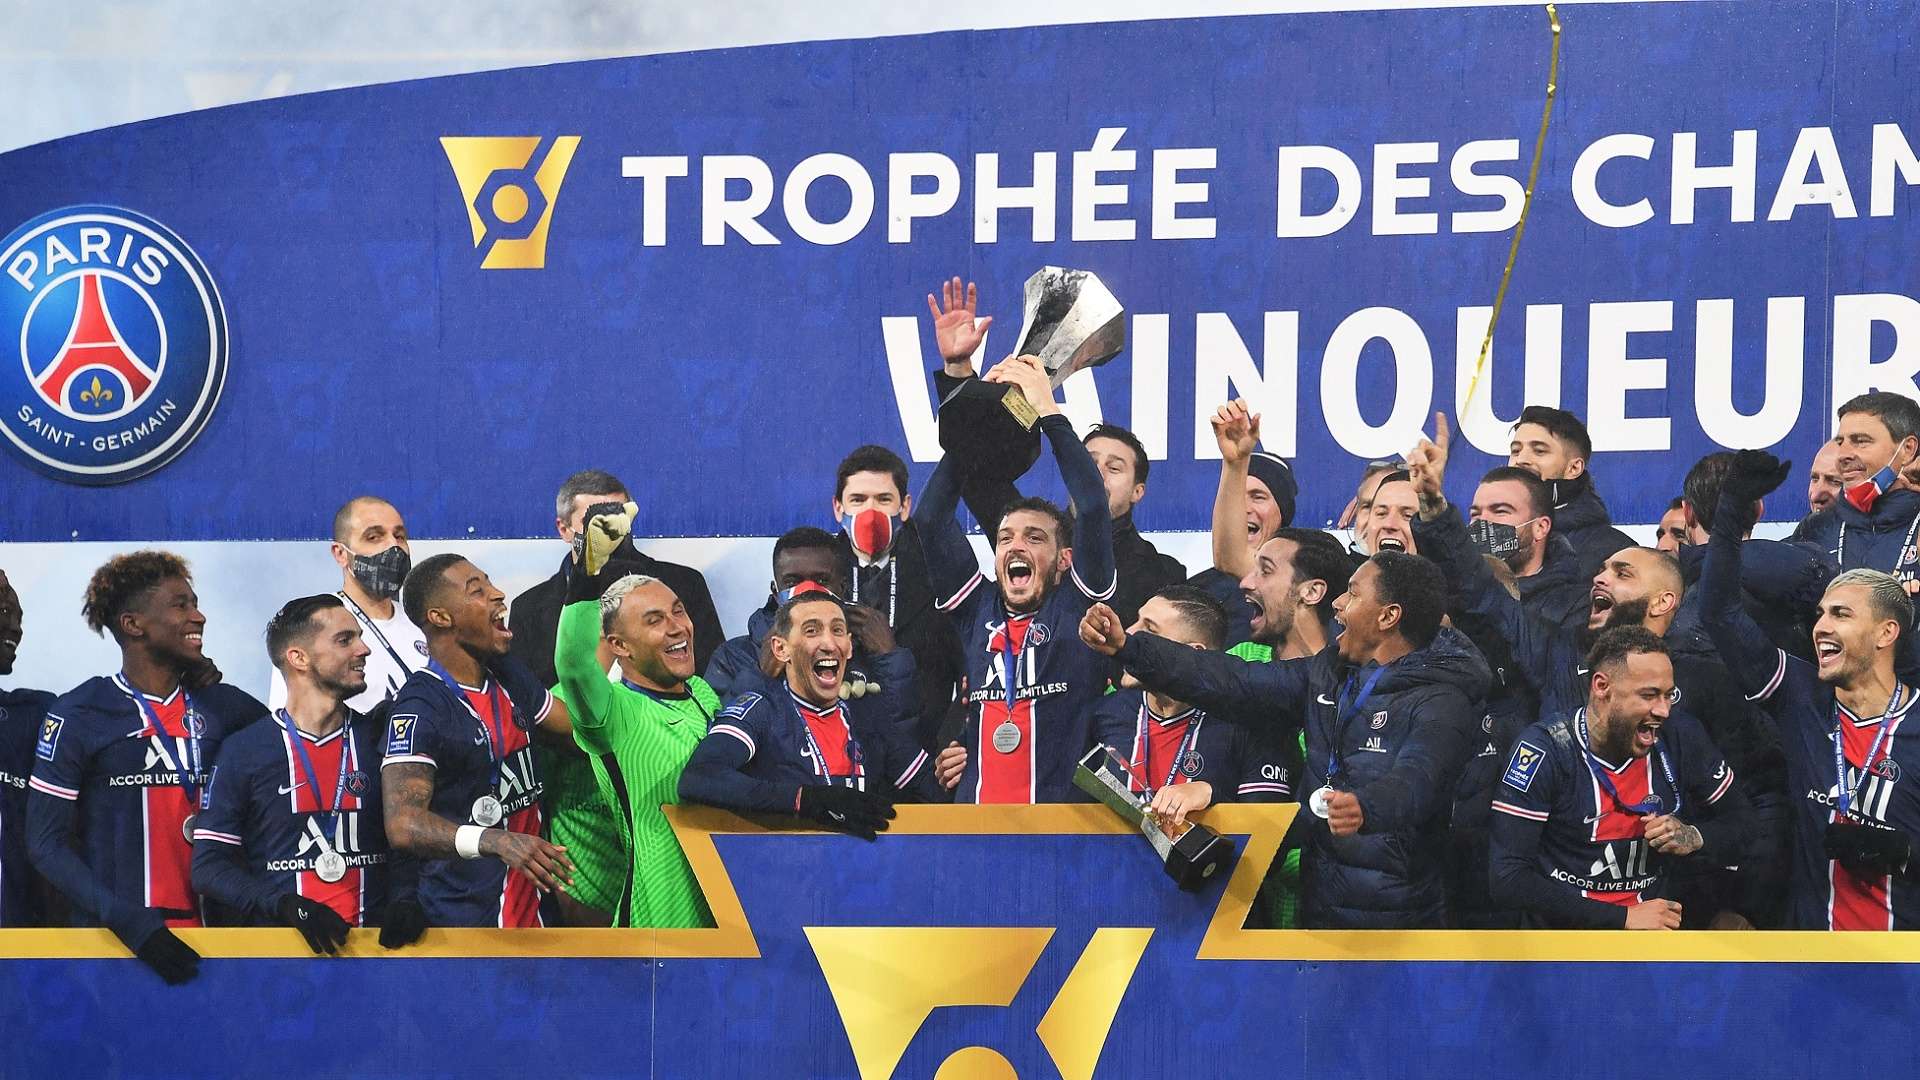 2021-01-14 PSG Trophee des champions